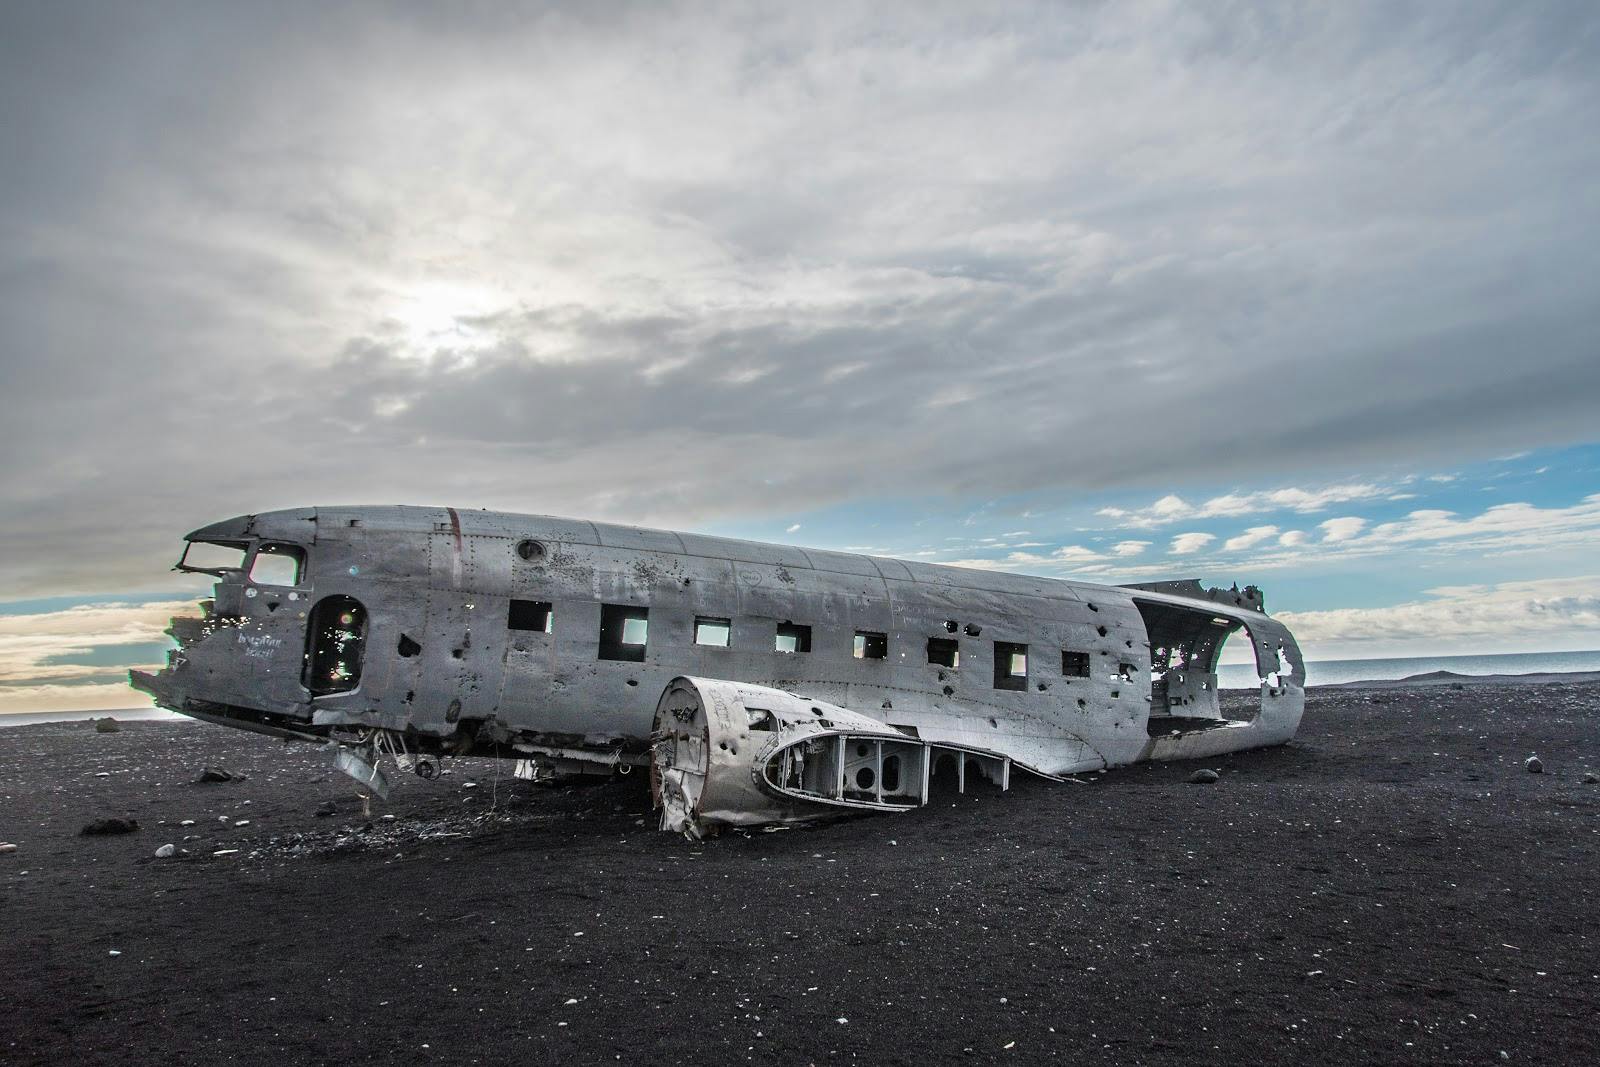 Image - Solheimasandur Plane Wreck